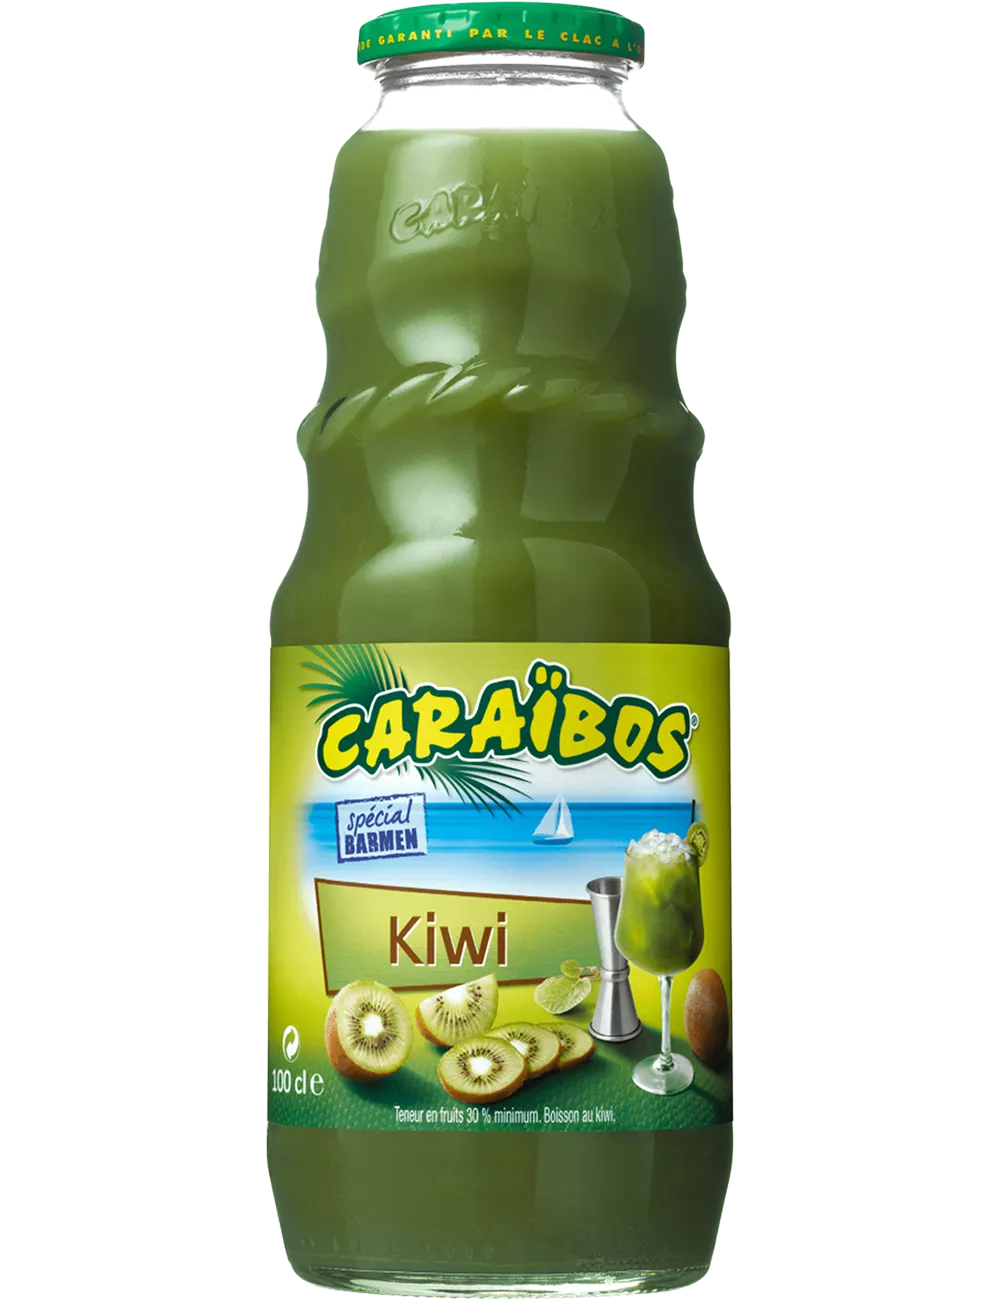 Nectar de Kiwi - Caraïbos